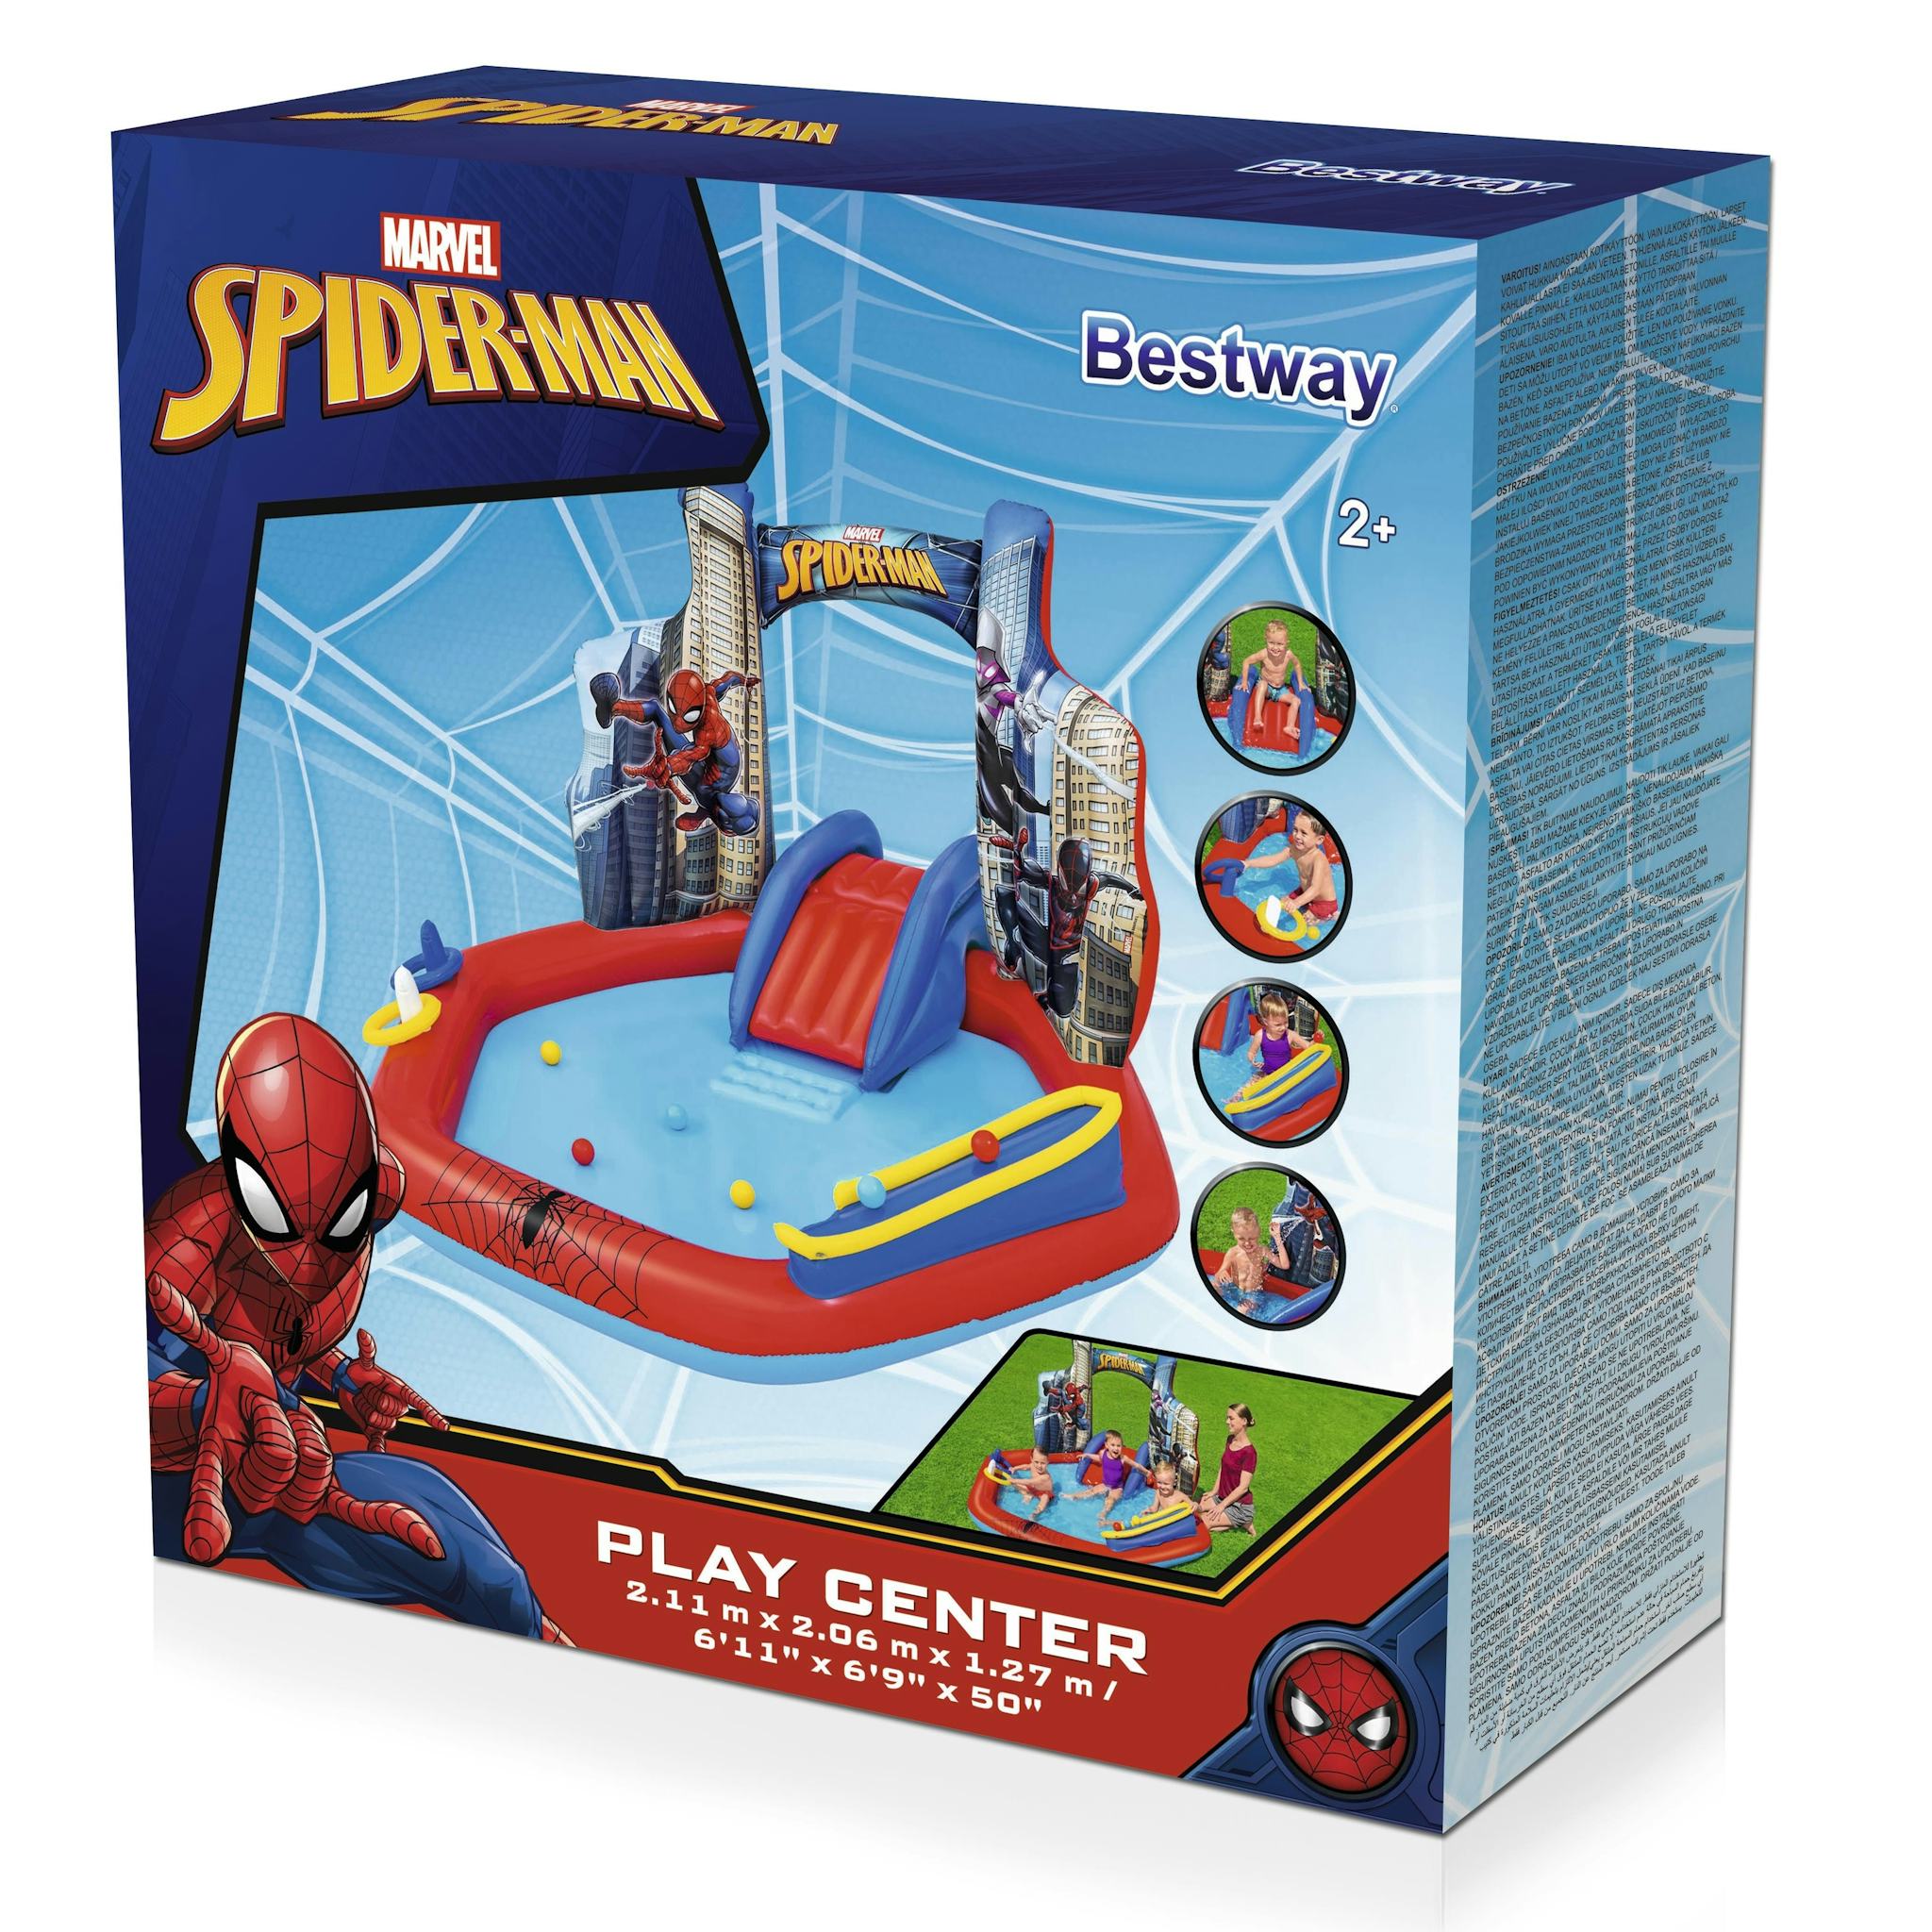 Giochi gonfiabili per bambini Playcenter gonfiabile Spider-Man Bestway 27